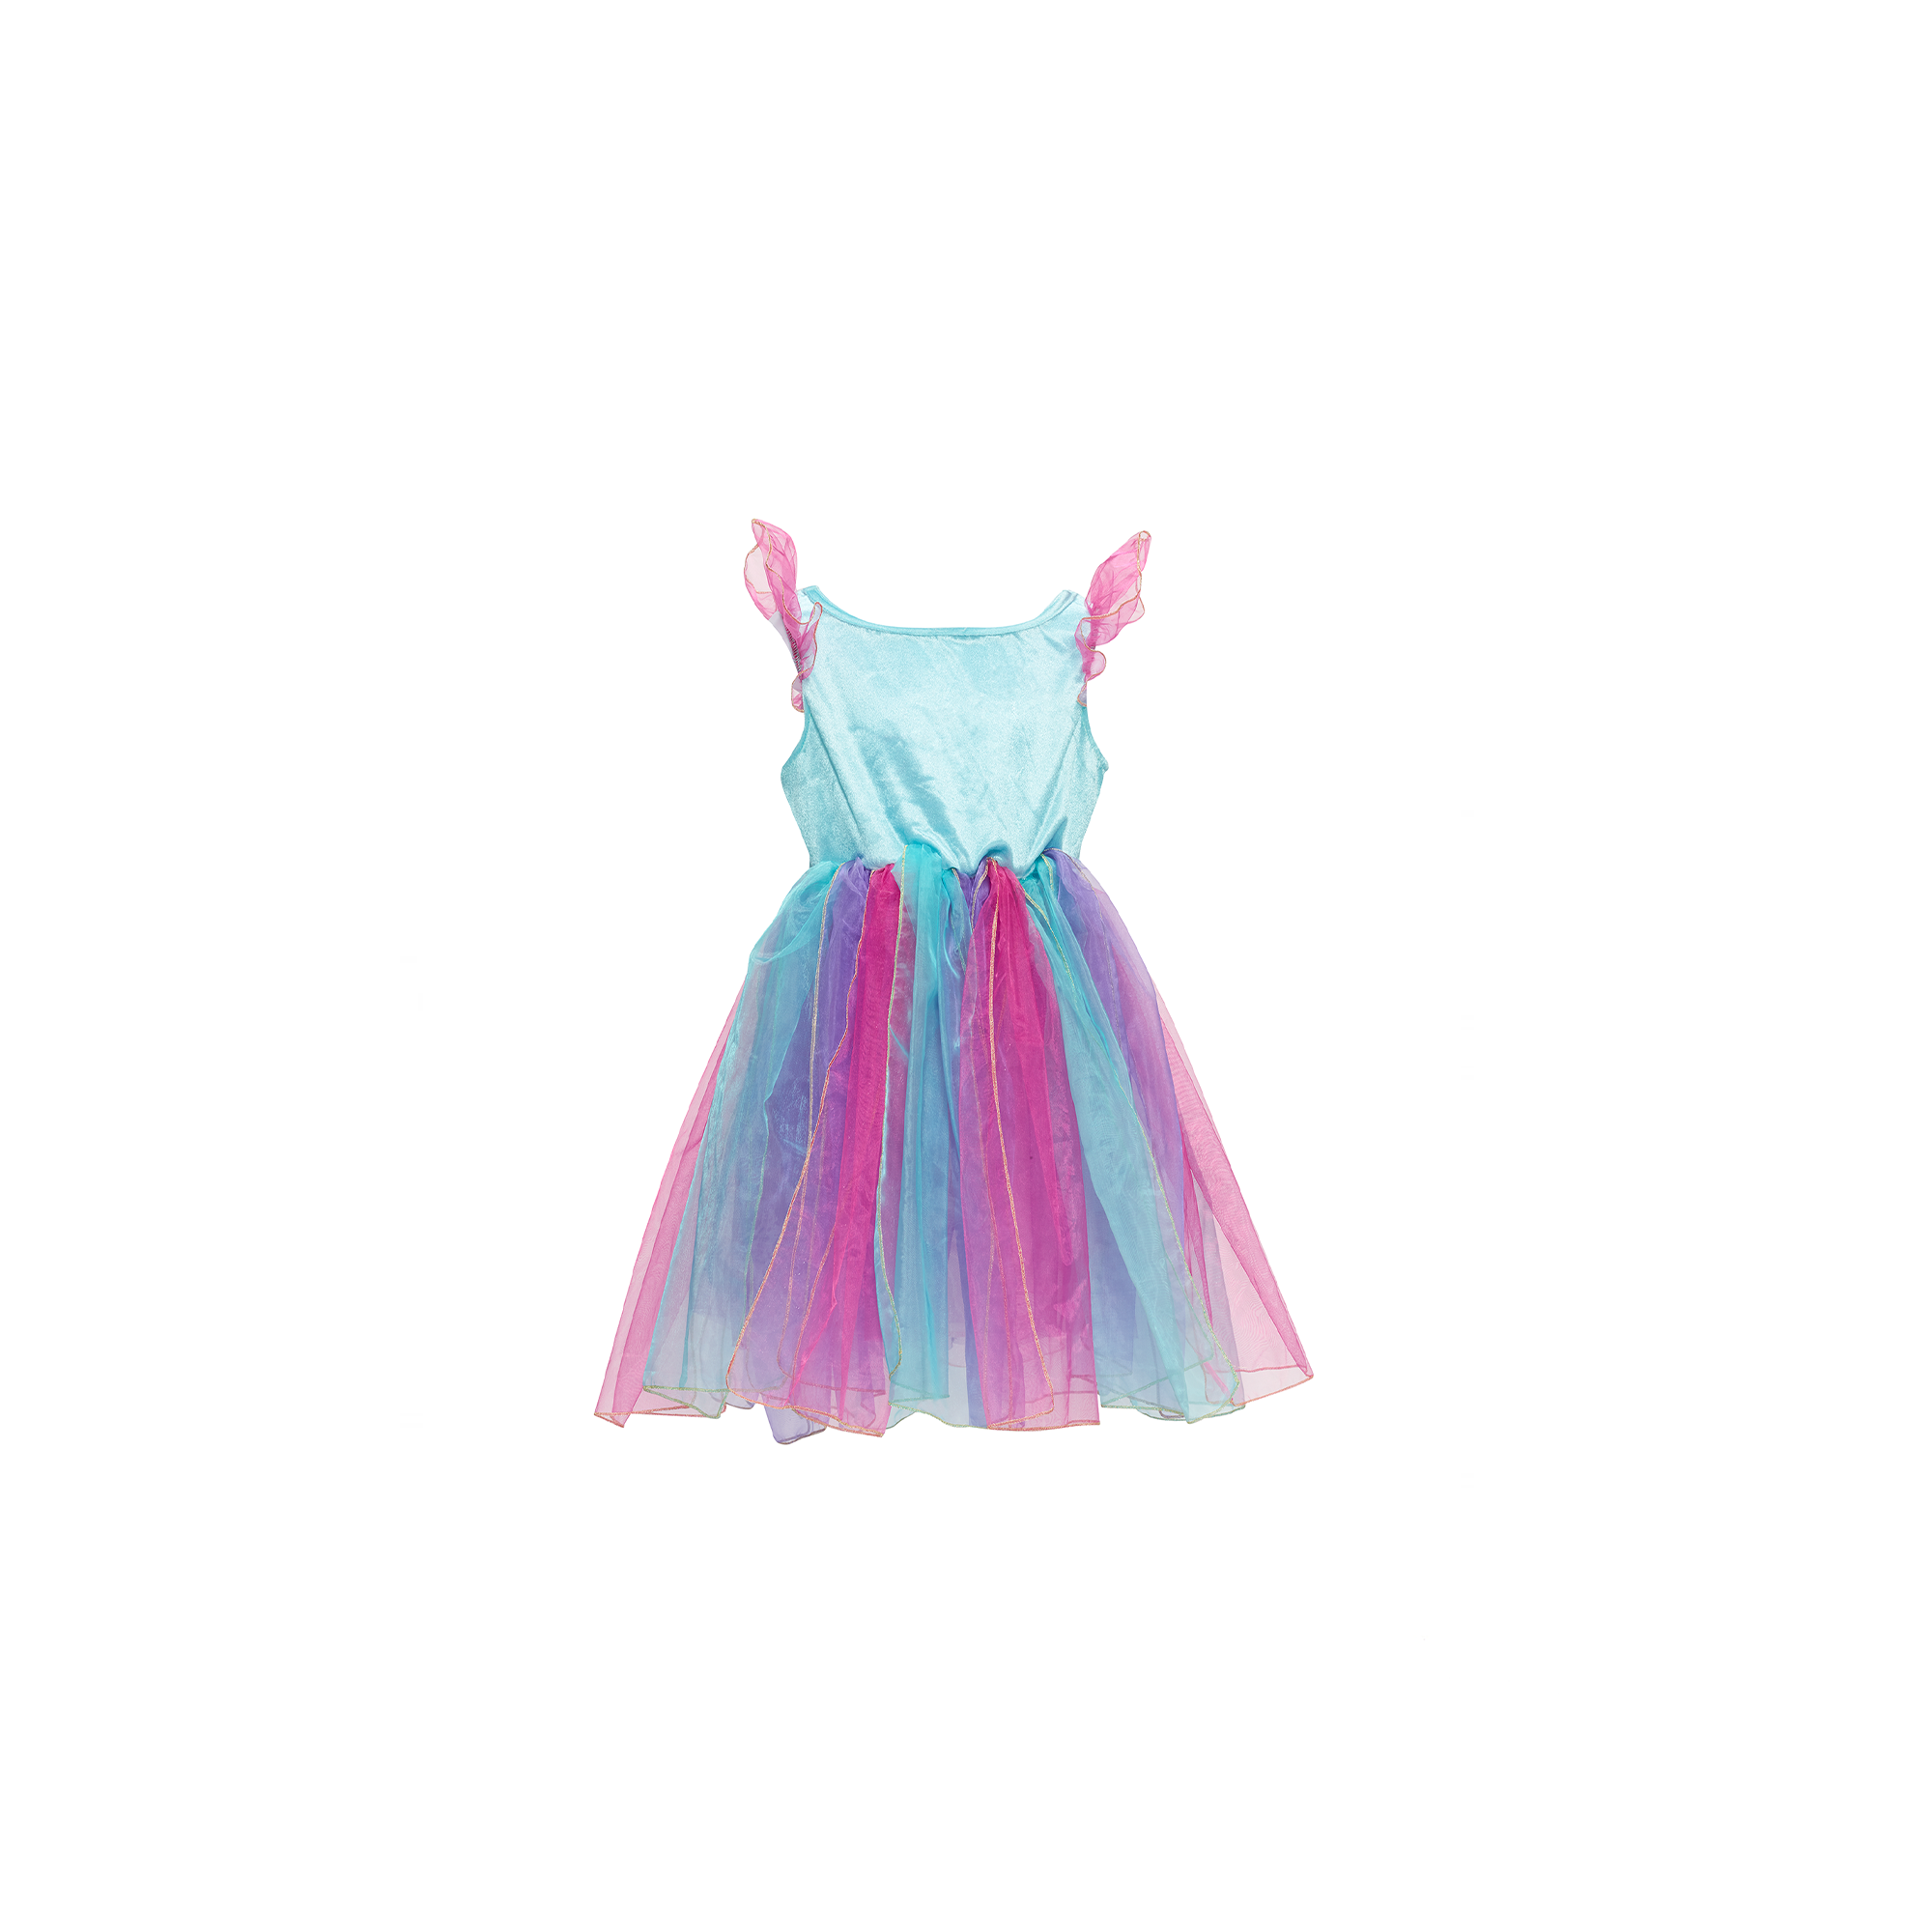 Wish's Dress – LaplandUK Christmas Store